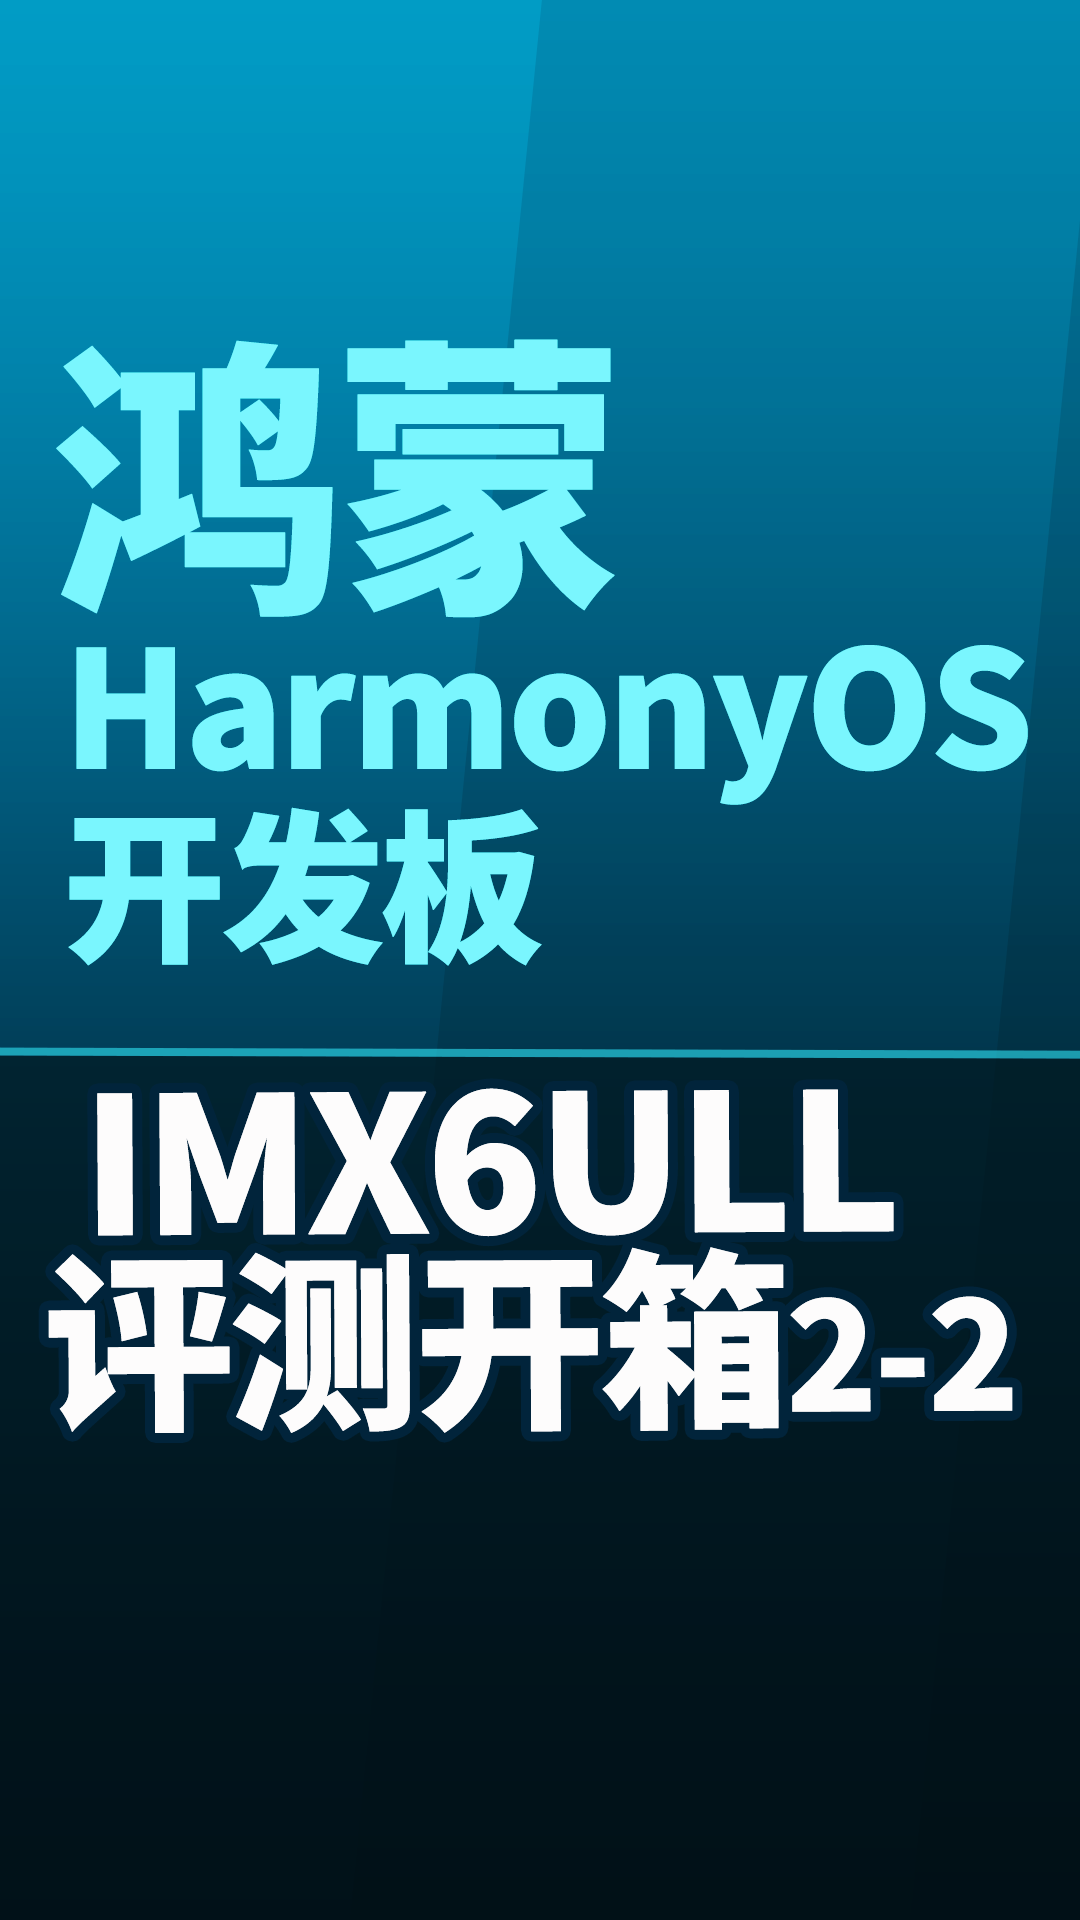 【鴻蒙評測開箱】鴻蒙 HarmonyOS 開發板 IMX6ULL 評測開箱2-2#嵌入式開發 